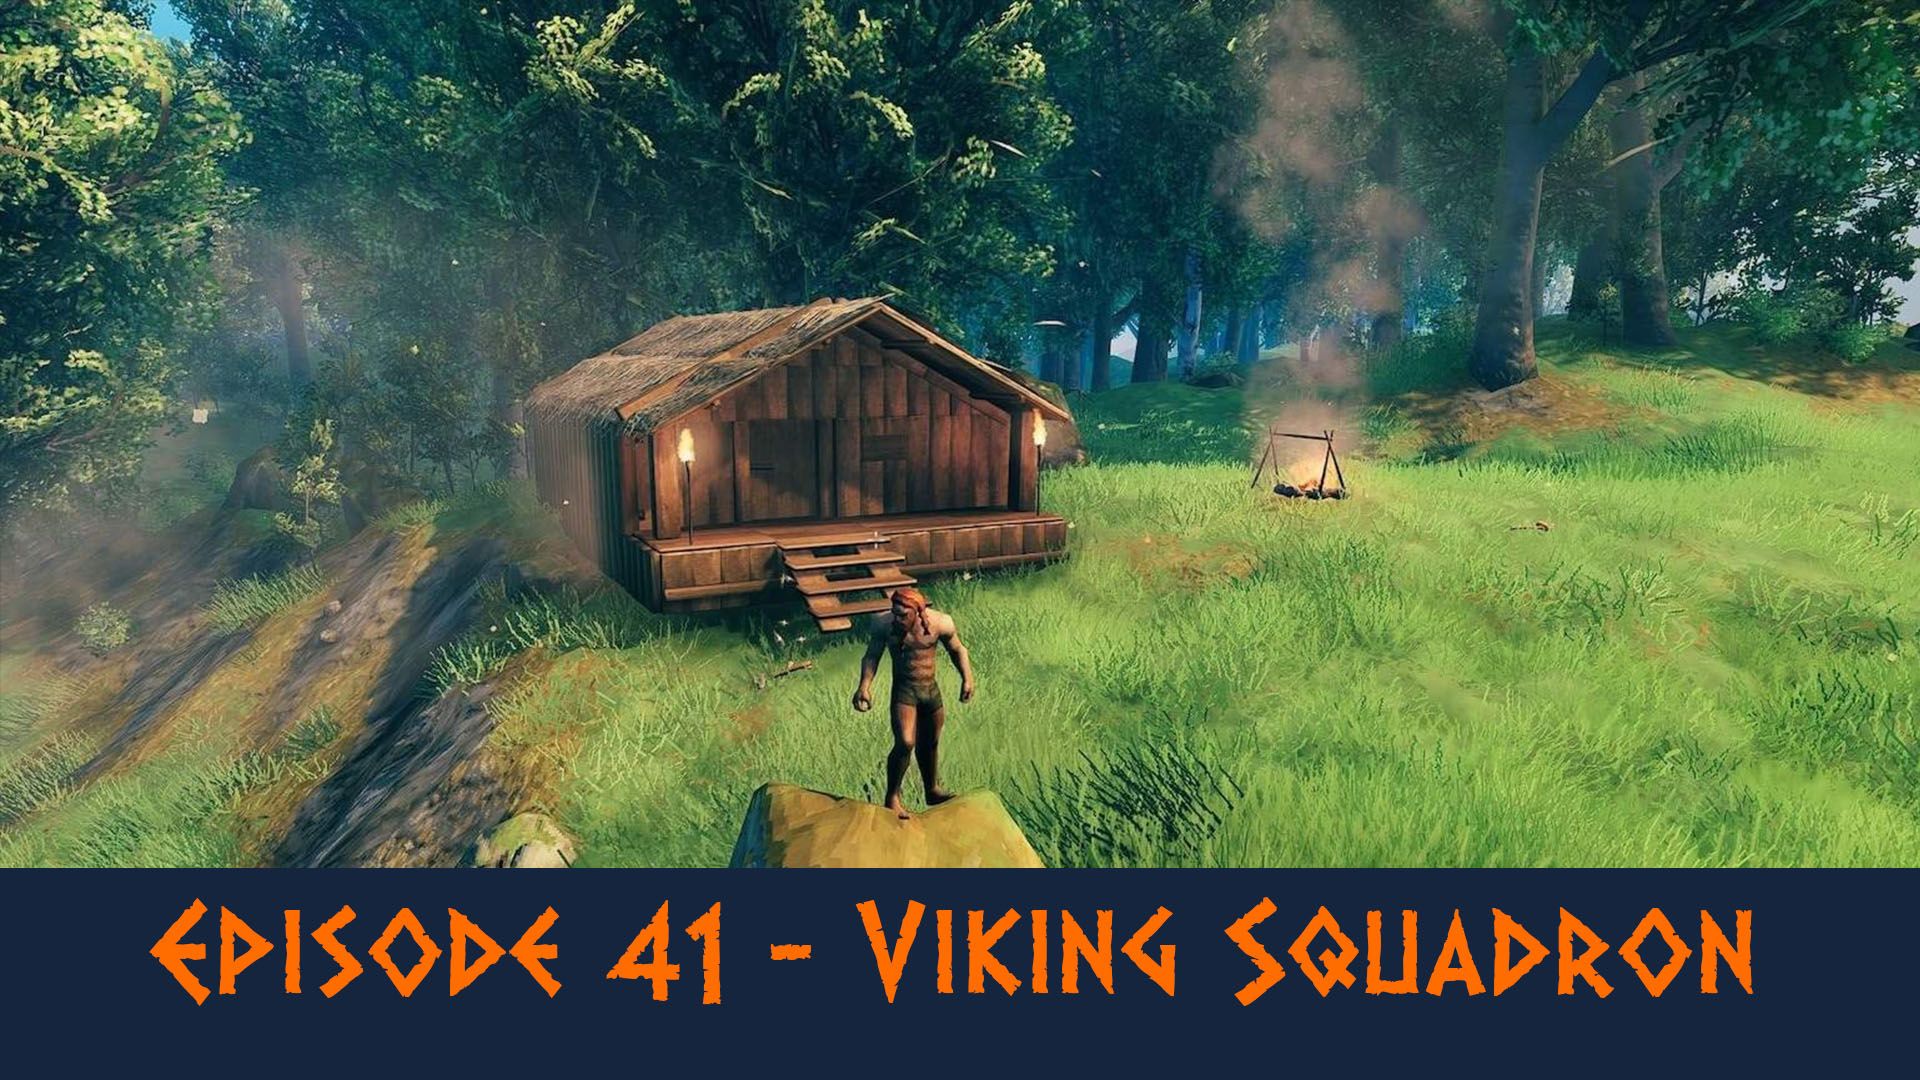 Episode 41 - Viking Squadron